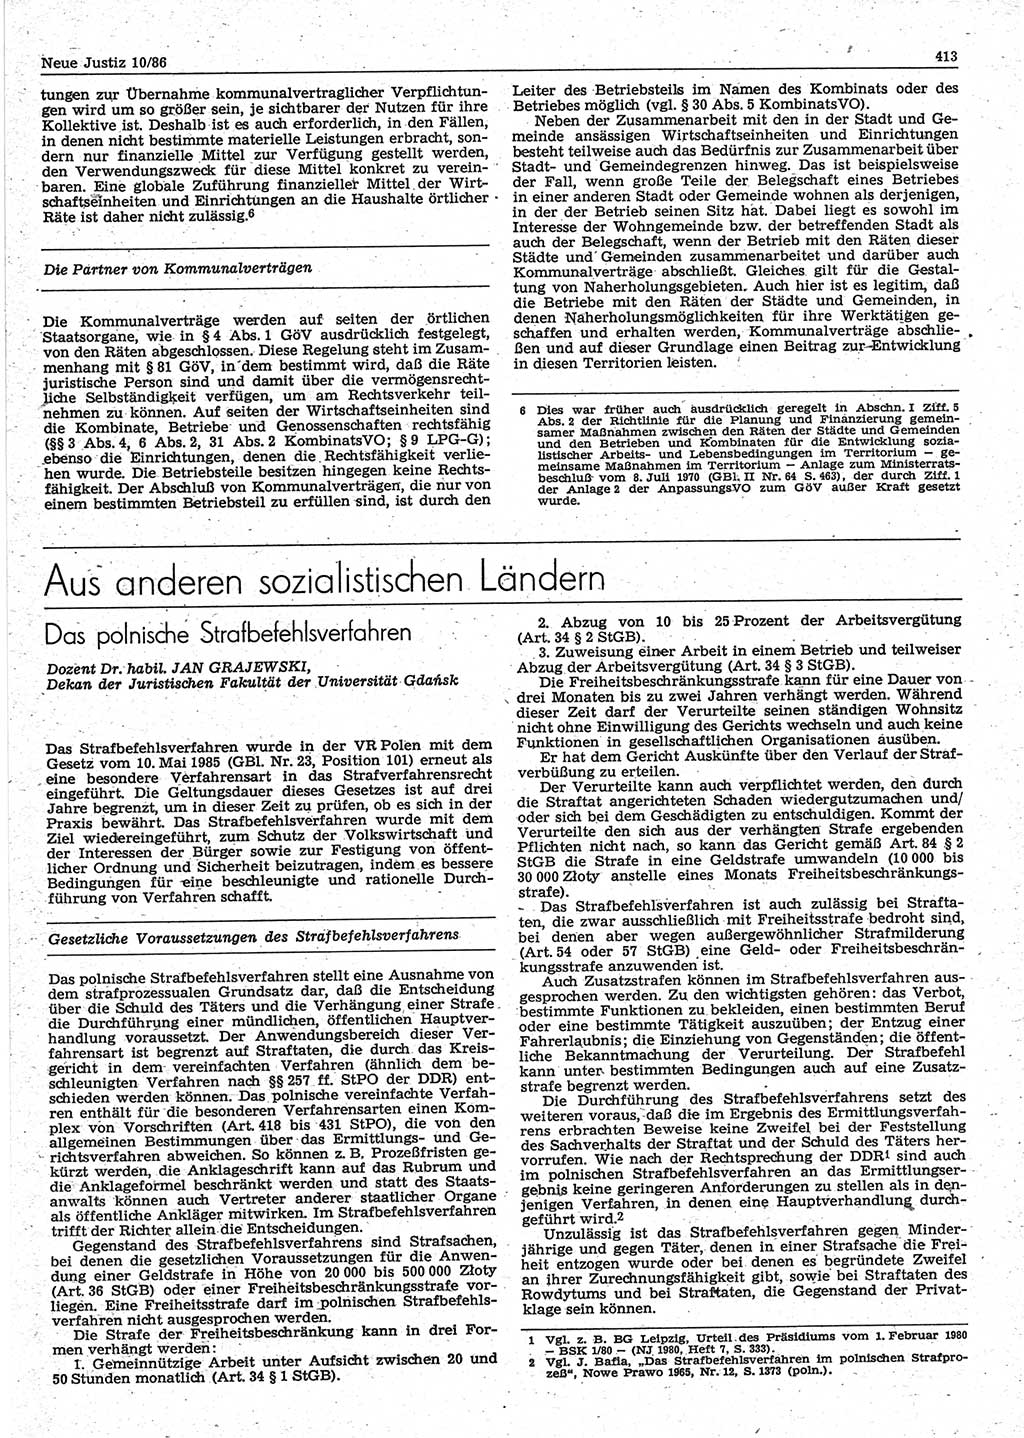 Neue Justiz (NJ), Zeitschrift für sozialistisches Recht und Gesetzlichkeit [Deutsche Demokratische Republik (DDR)], 40. Jahrgang 1986, Seite 413 (NJ DDR 1986, S. 413)